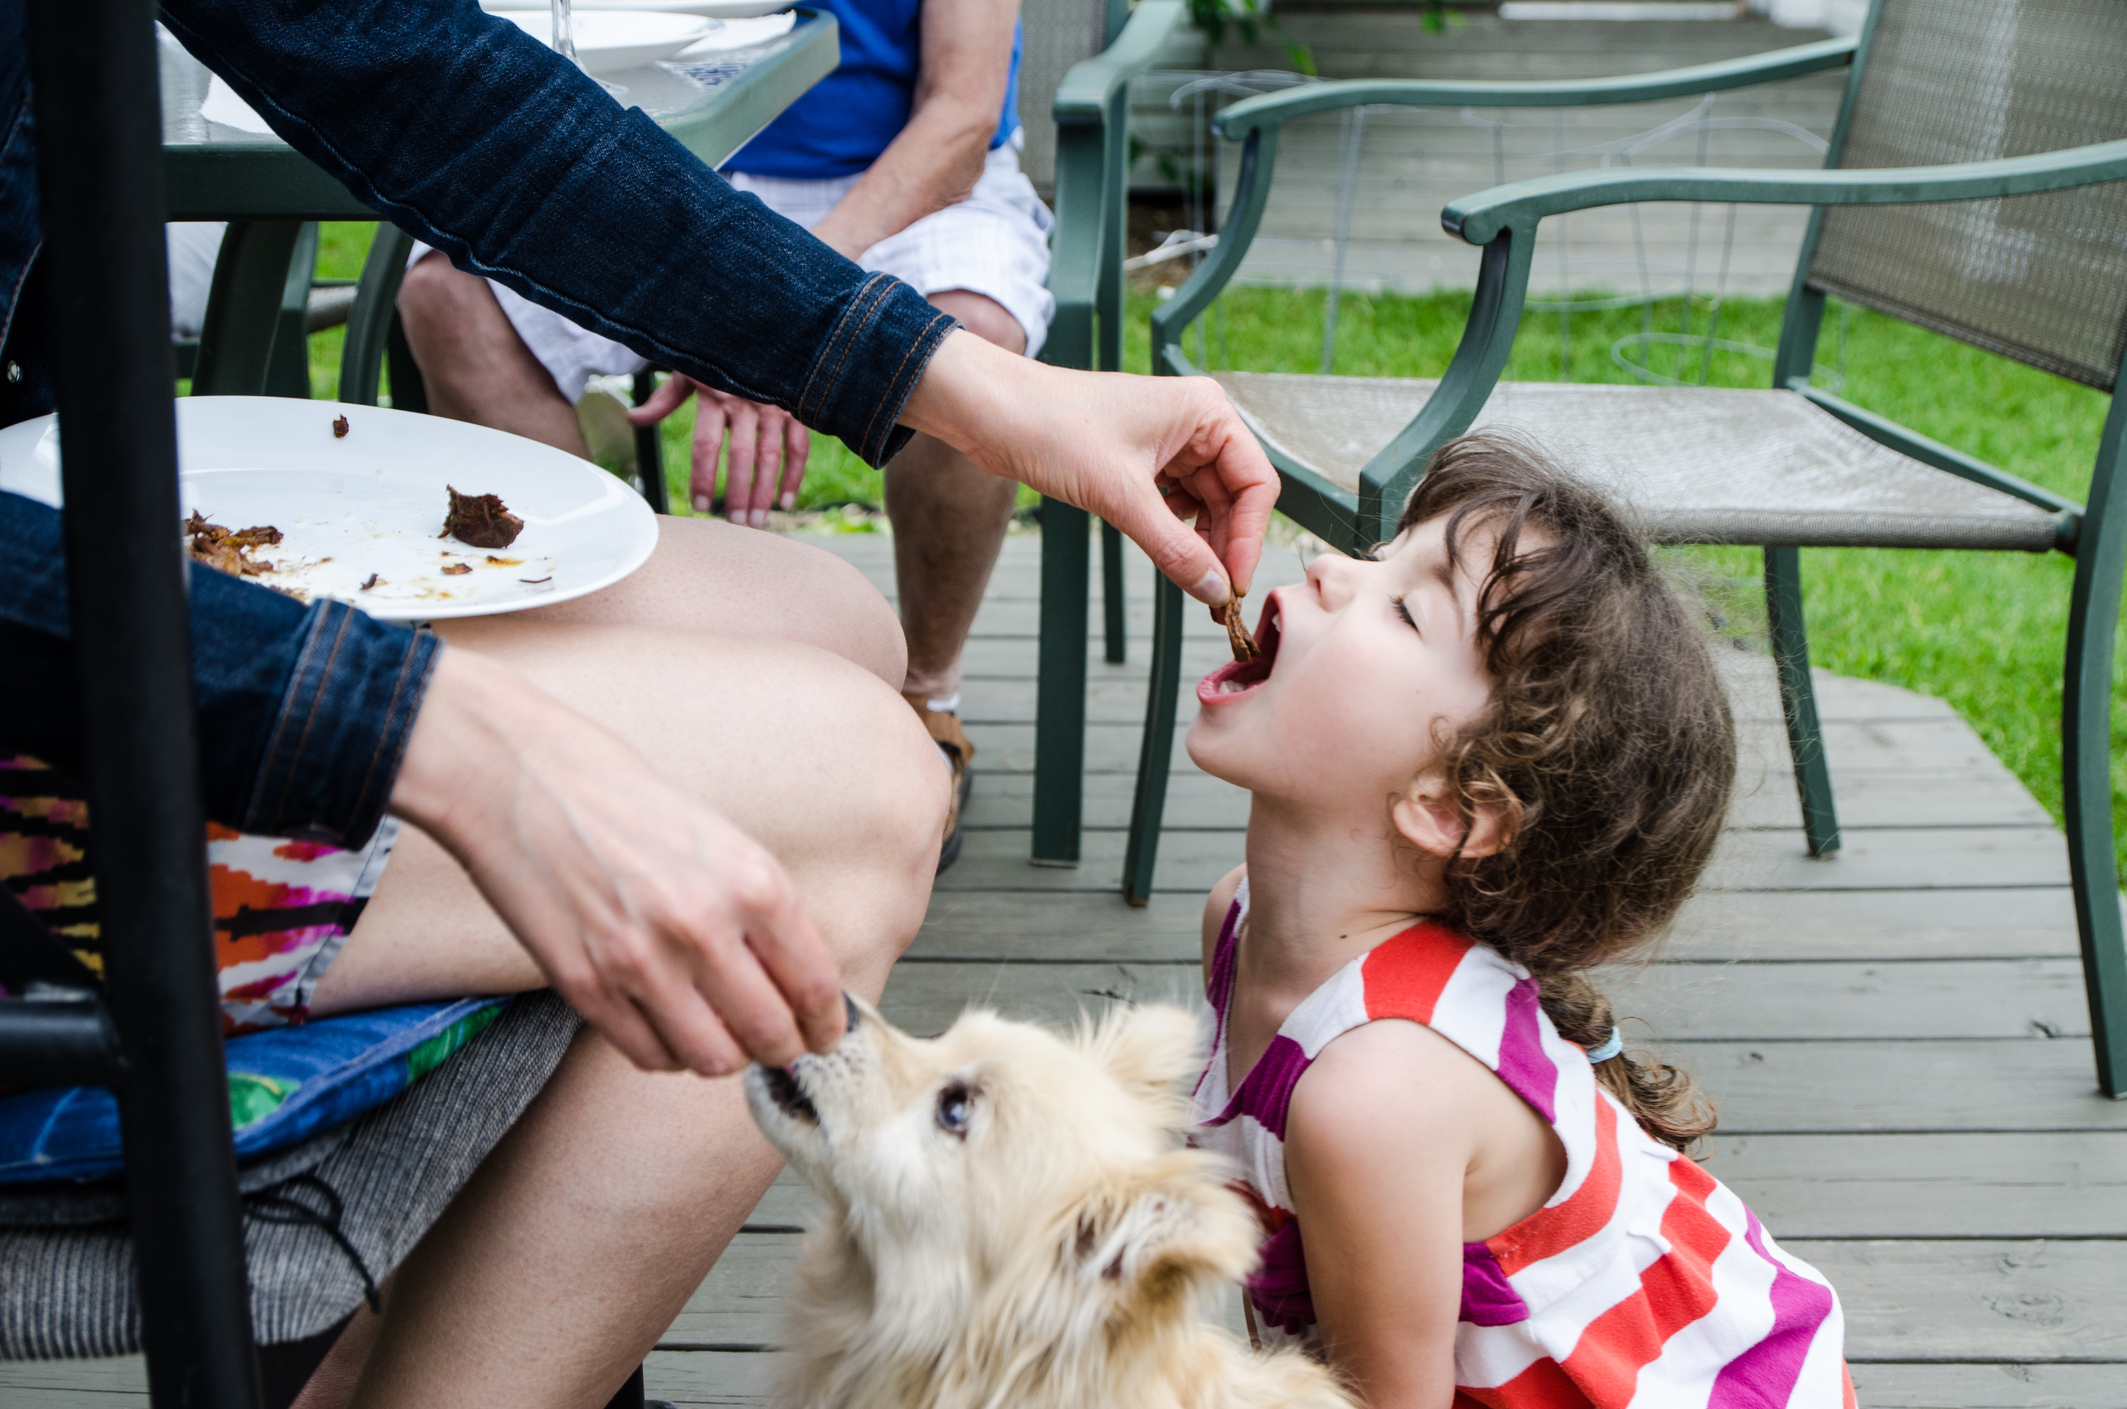 A little girl getting fed alongside her dog